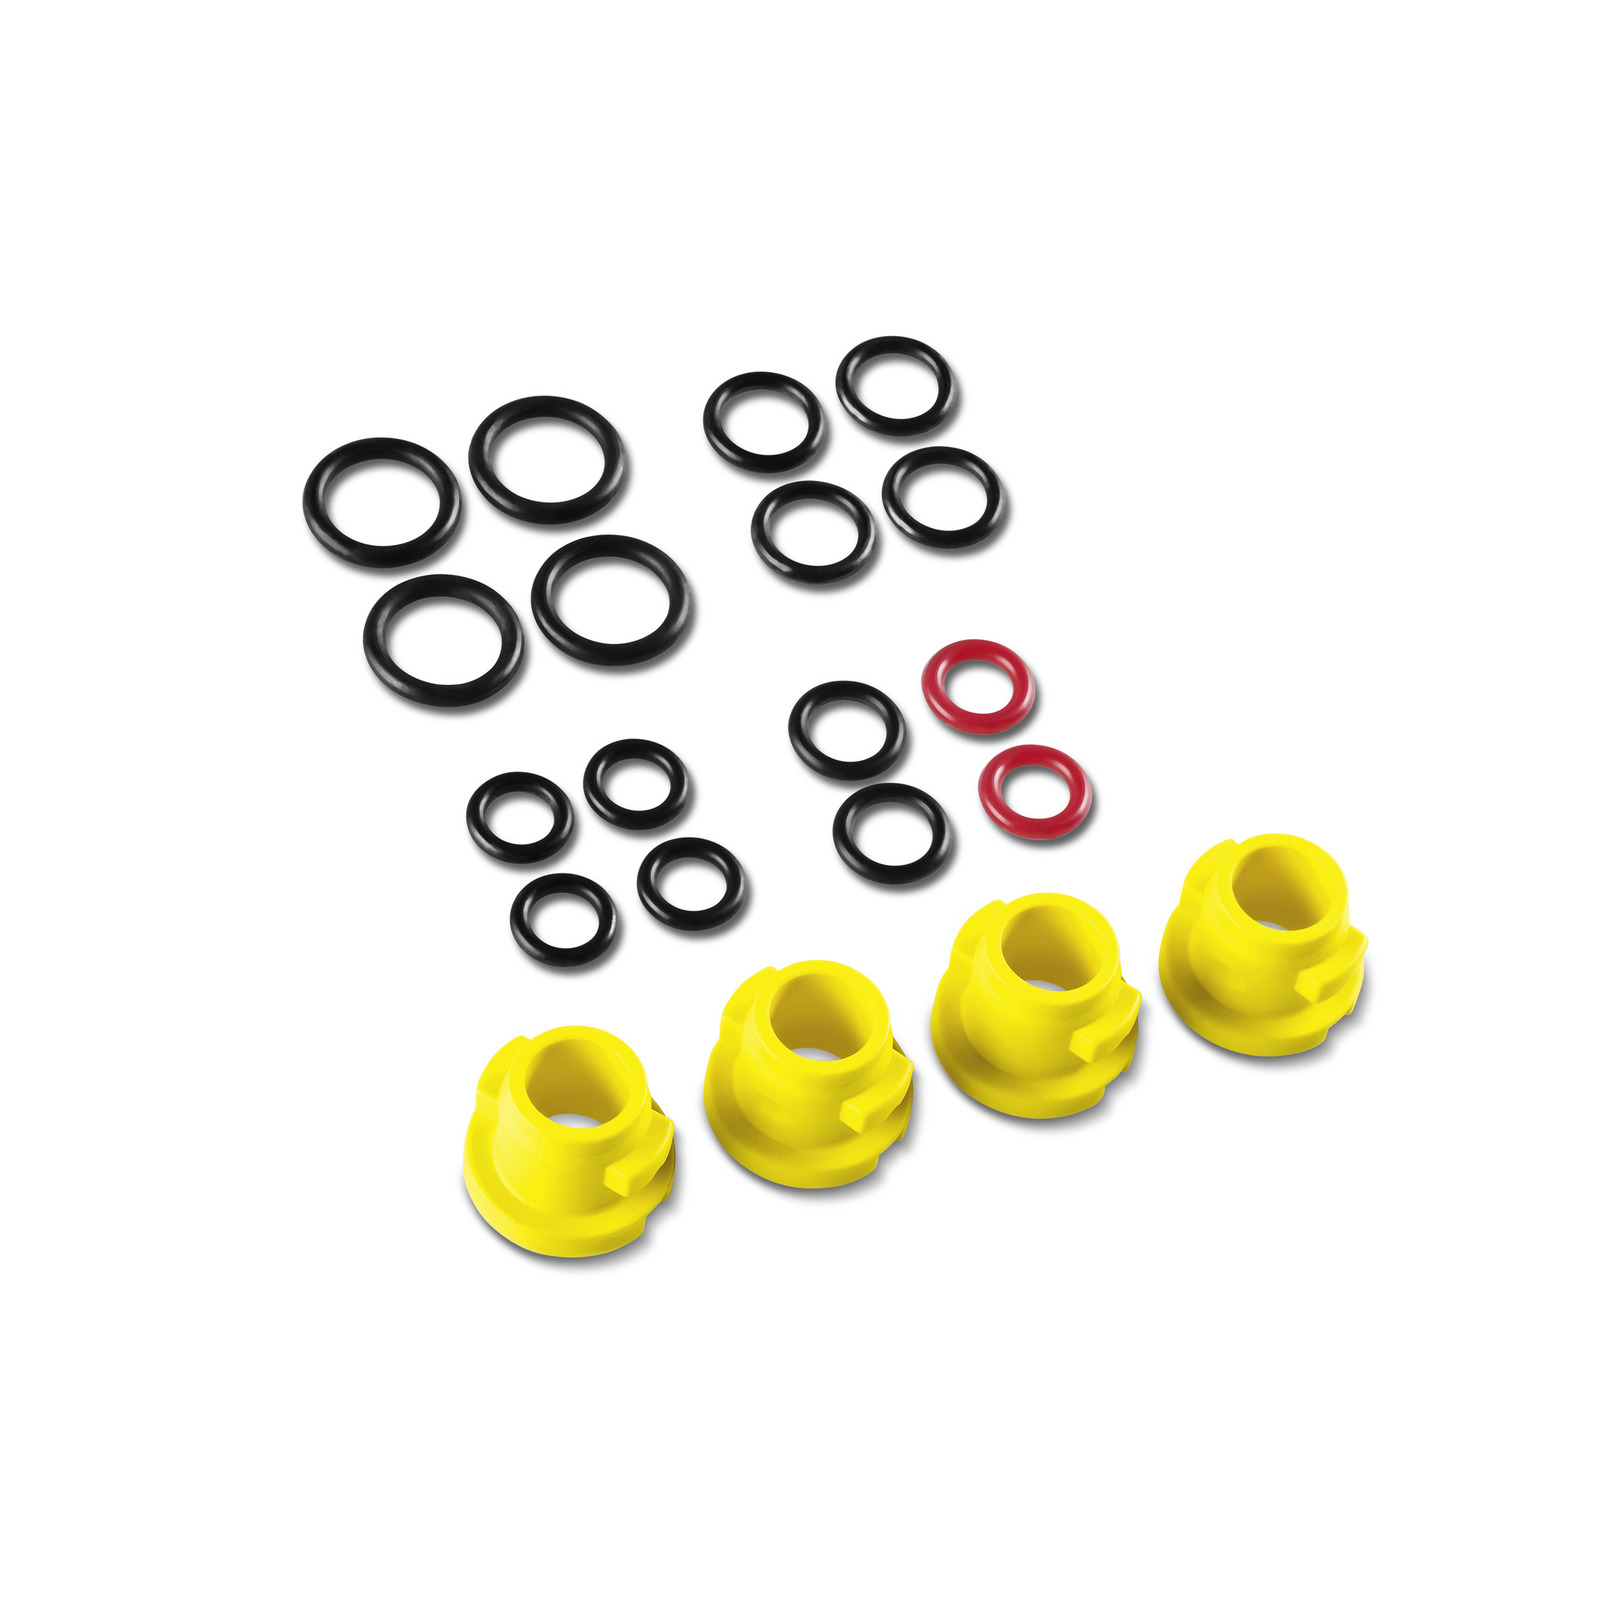 Karcher 8.753-821.0 18 mm U-Seal Kit Pressure Washer Seals Rings 